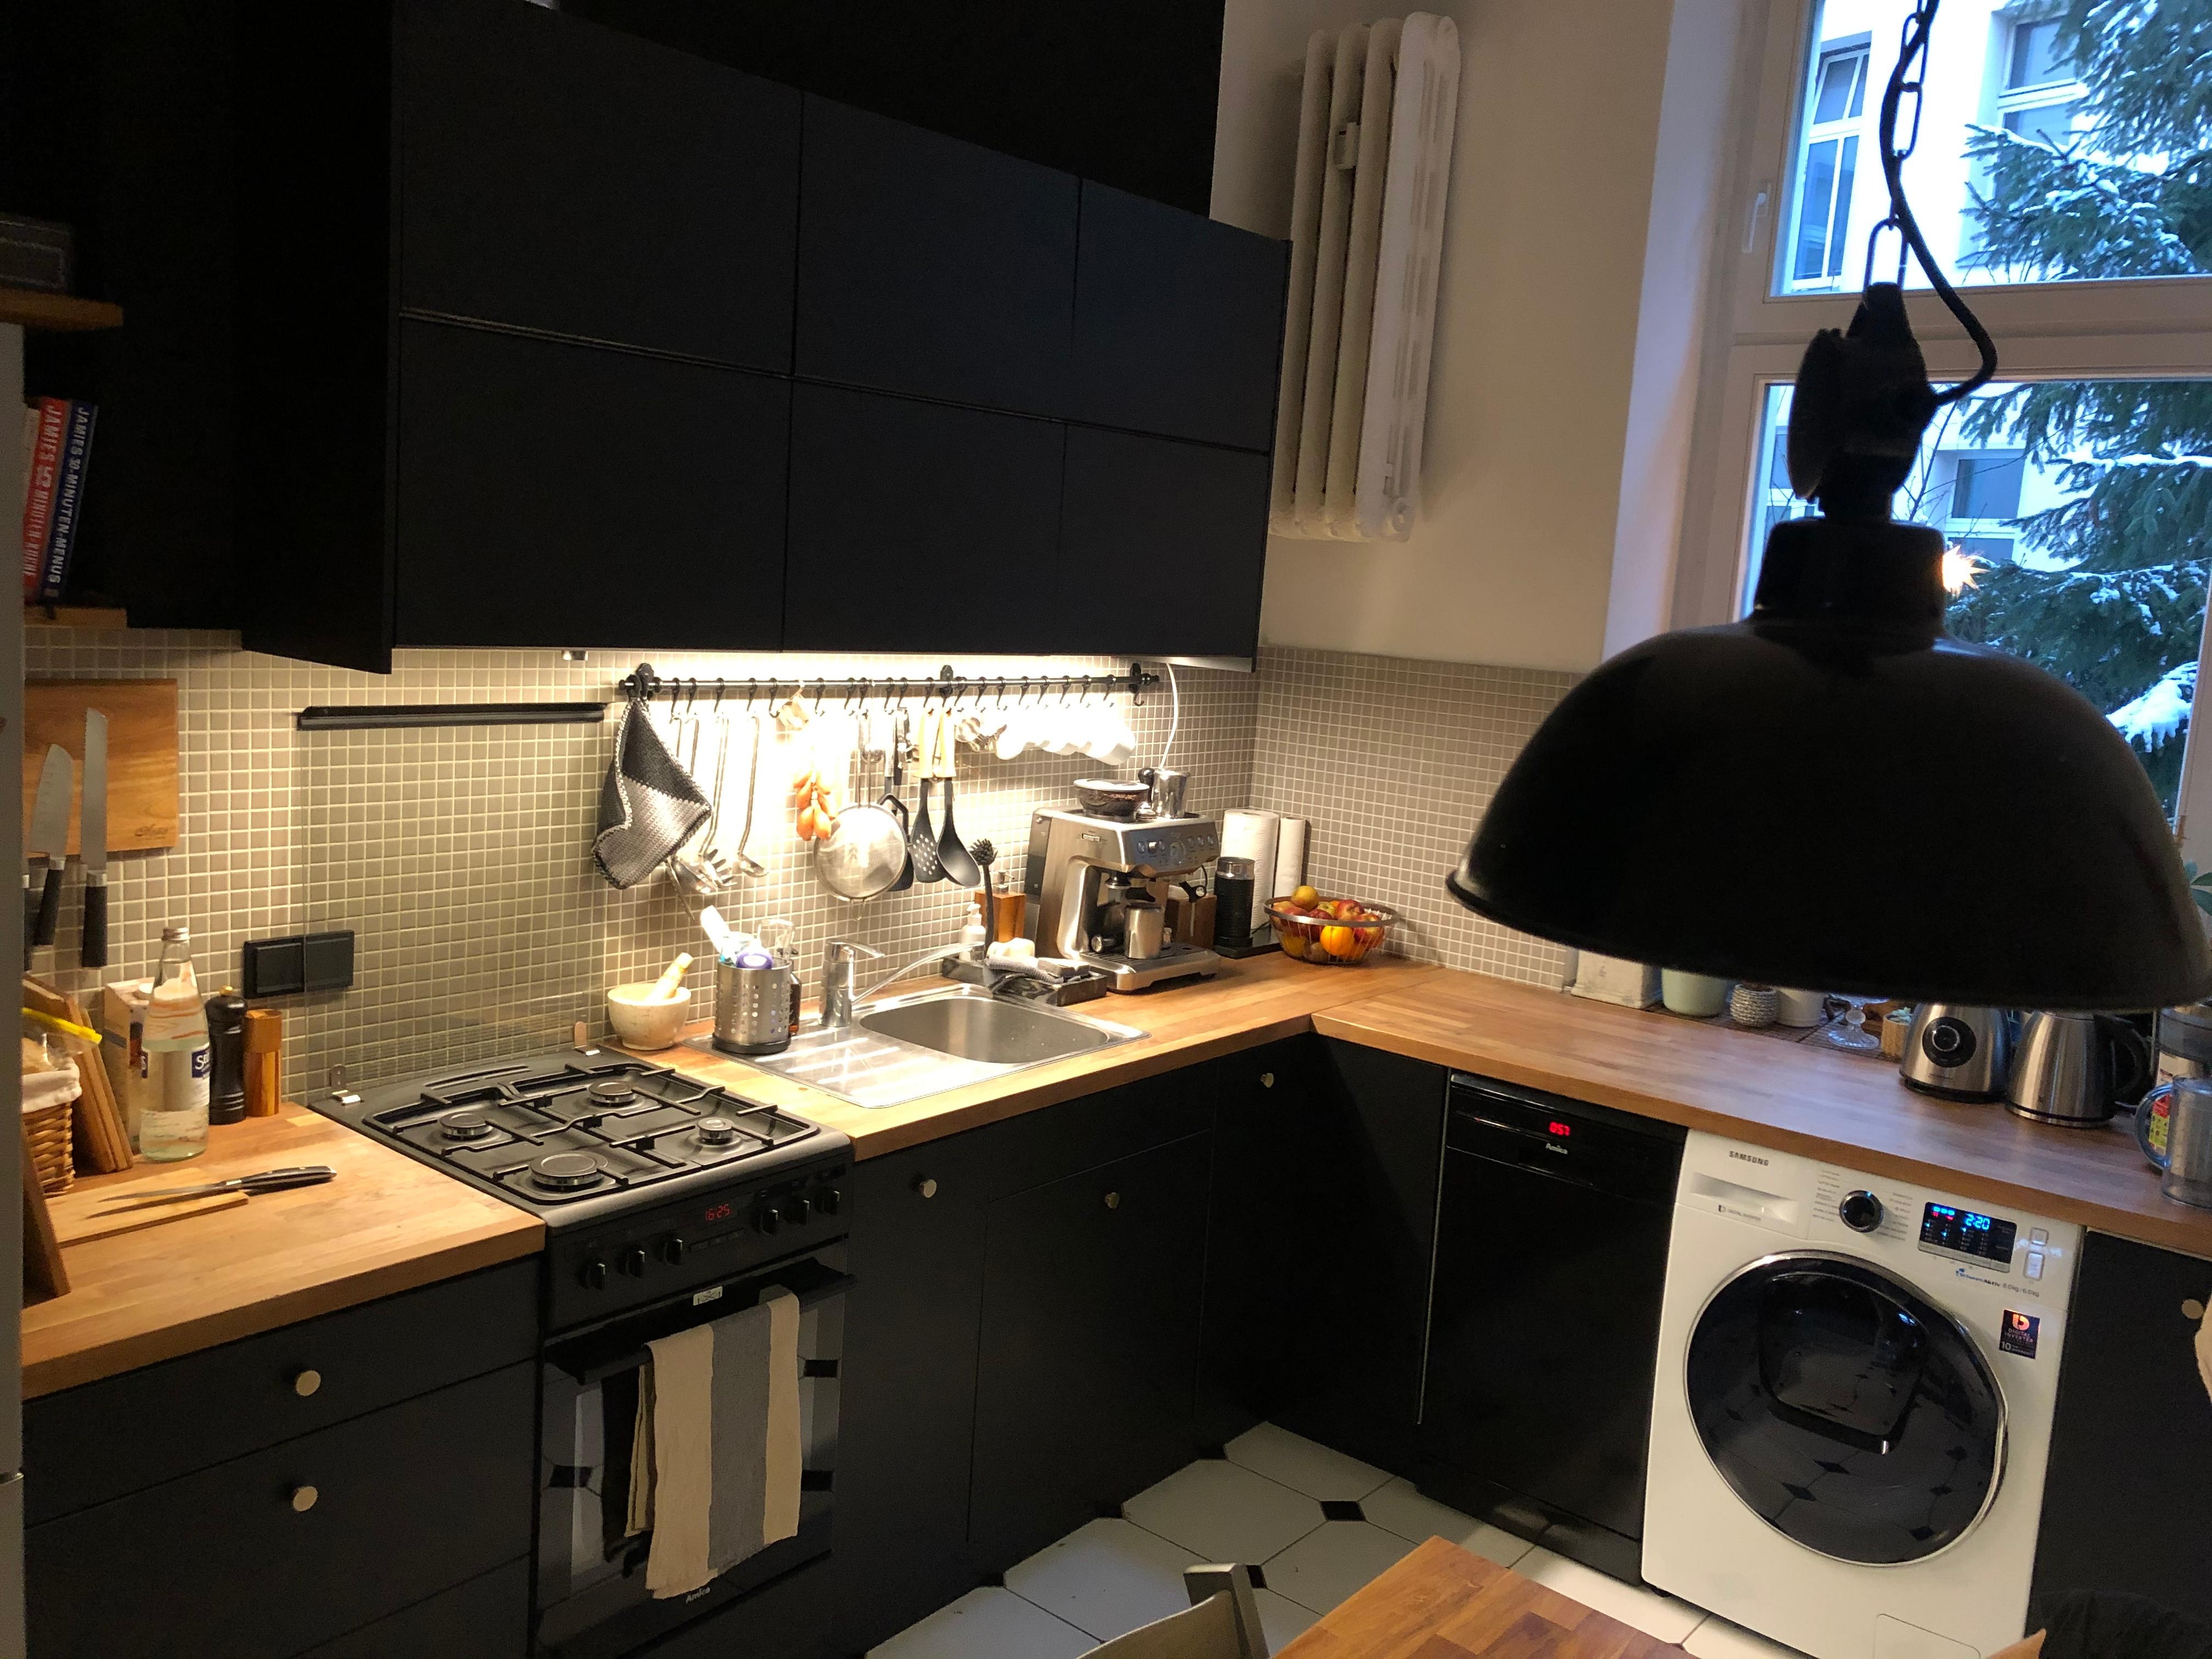 Endlich ist auch der schwarze Herd eingebaut 👍🏼😎

#schwarzeKüche #Küchenliebe 